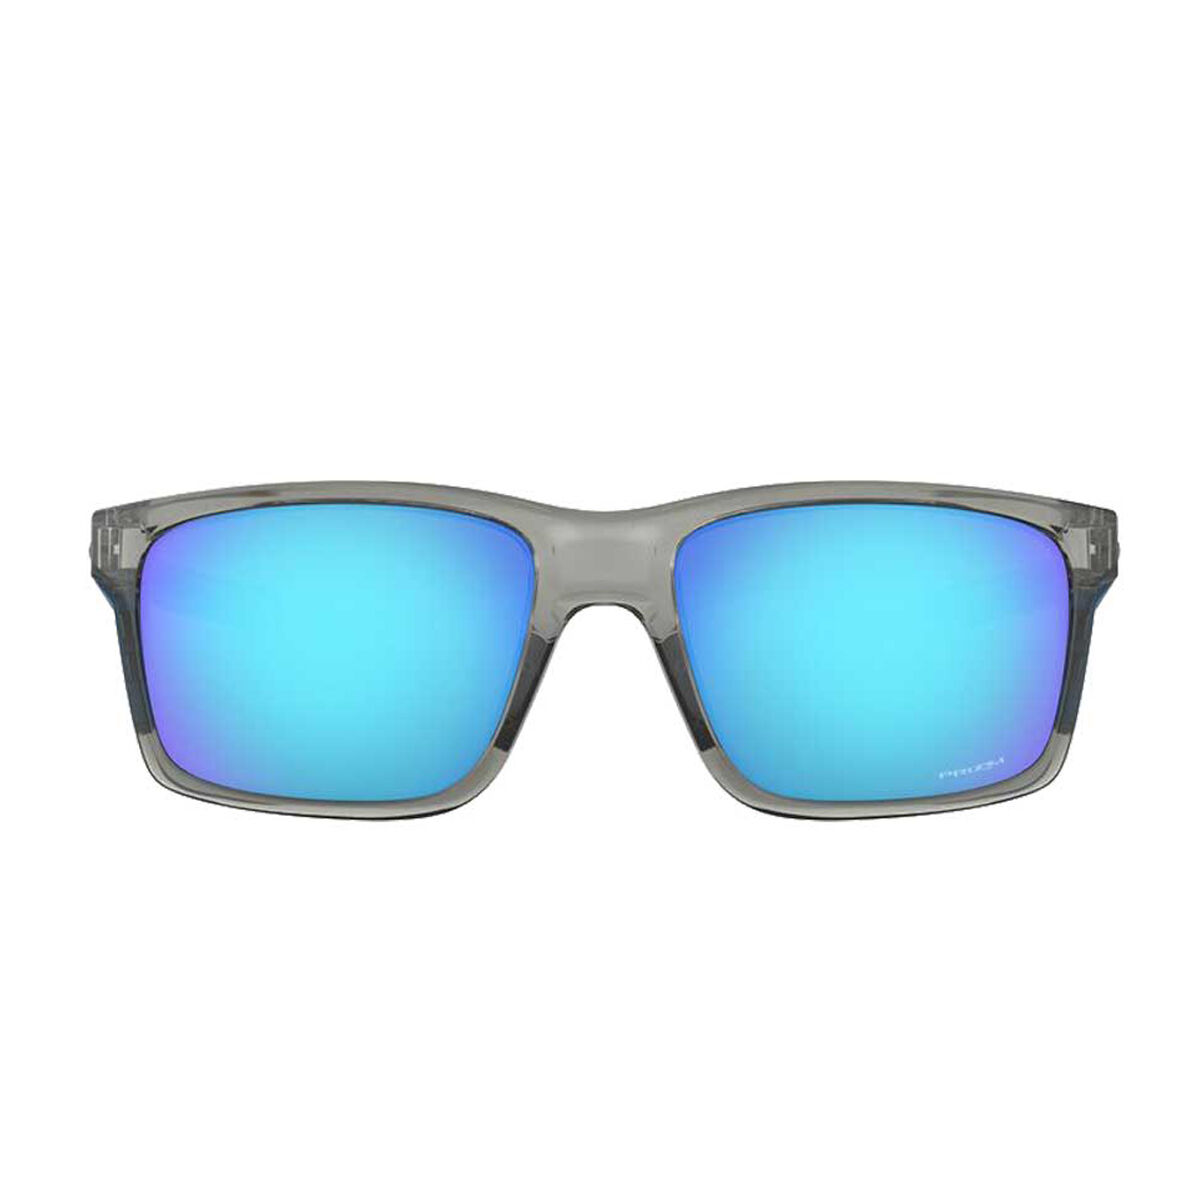 rebel sport oakley sunglasses